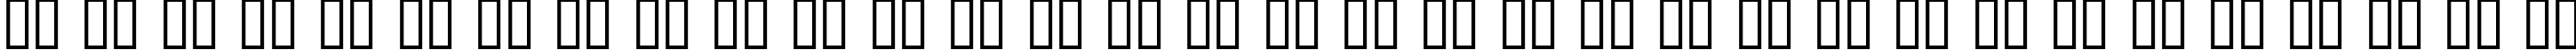 Пример написания русского алфавита шрифтом Ventilate AOE